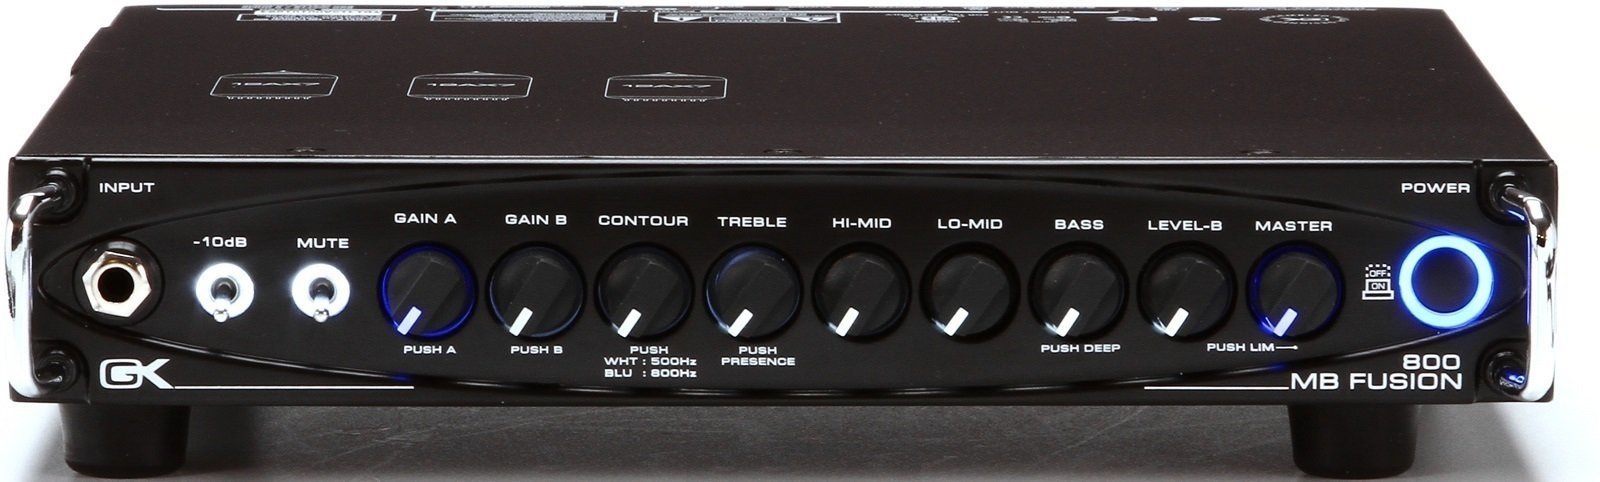 Amplificador de bajo híbrido Gallien Krueger MB-FUSION800